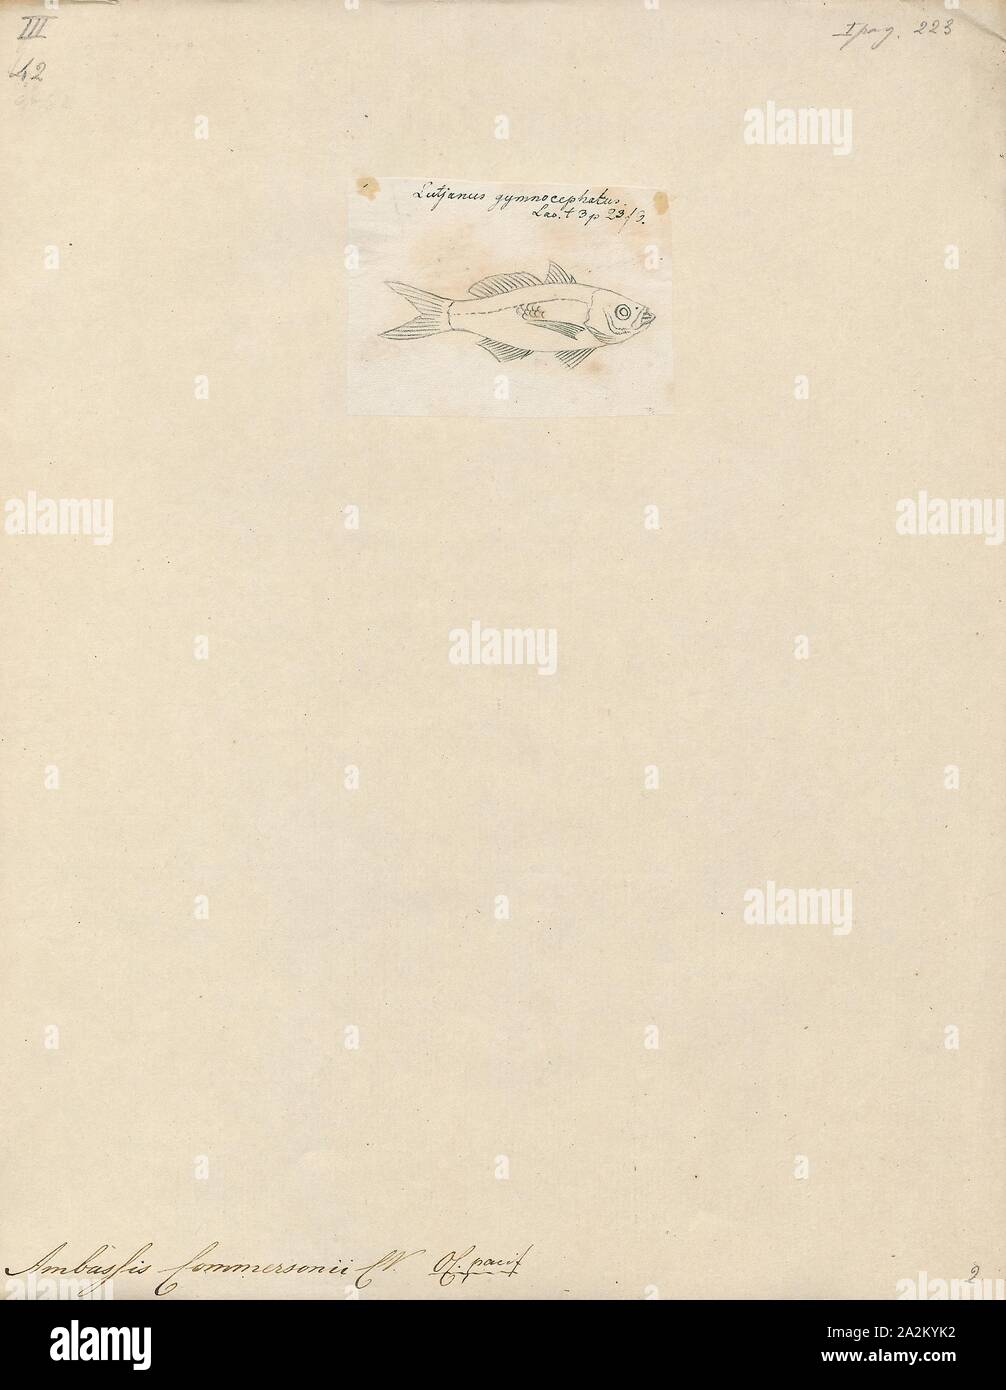 Ambassis commersonii, Drucken, Ambassis ist eine Gattung in der Familie der Fische, die asiatische Ambassidae glassfishes. Sie sind weit verbreitet in der indopazifischen Region gefunden, mit Arten, die in frischen, Brackwasser und küstennahen Seegewässern., 1798-1876 Stockfoto